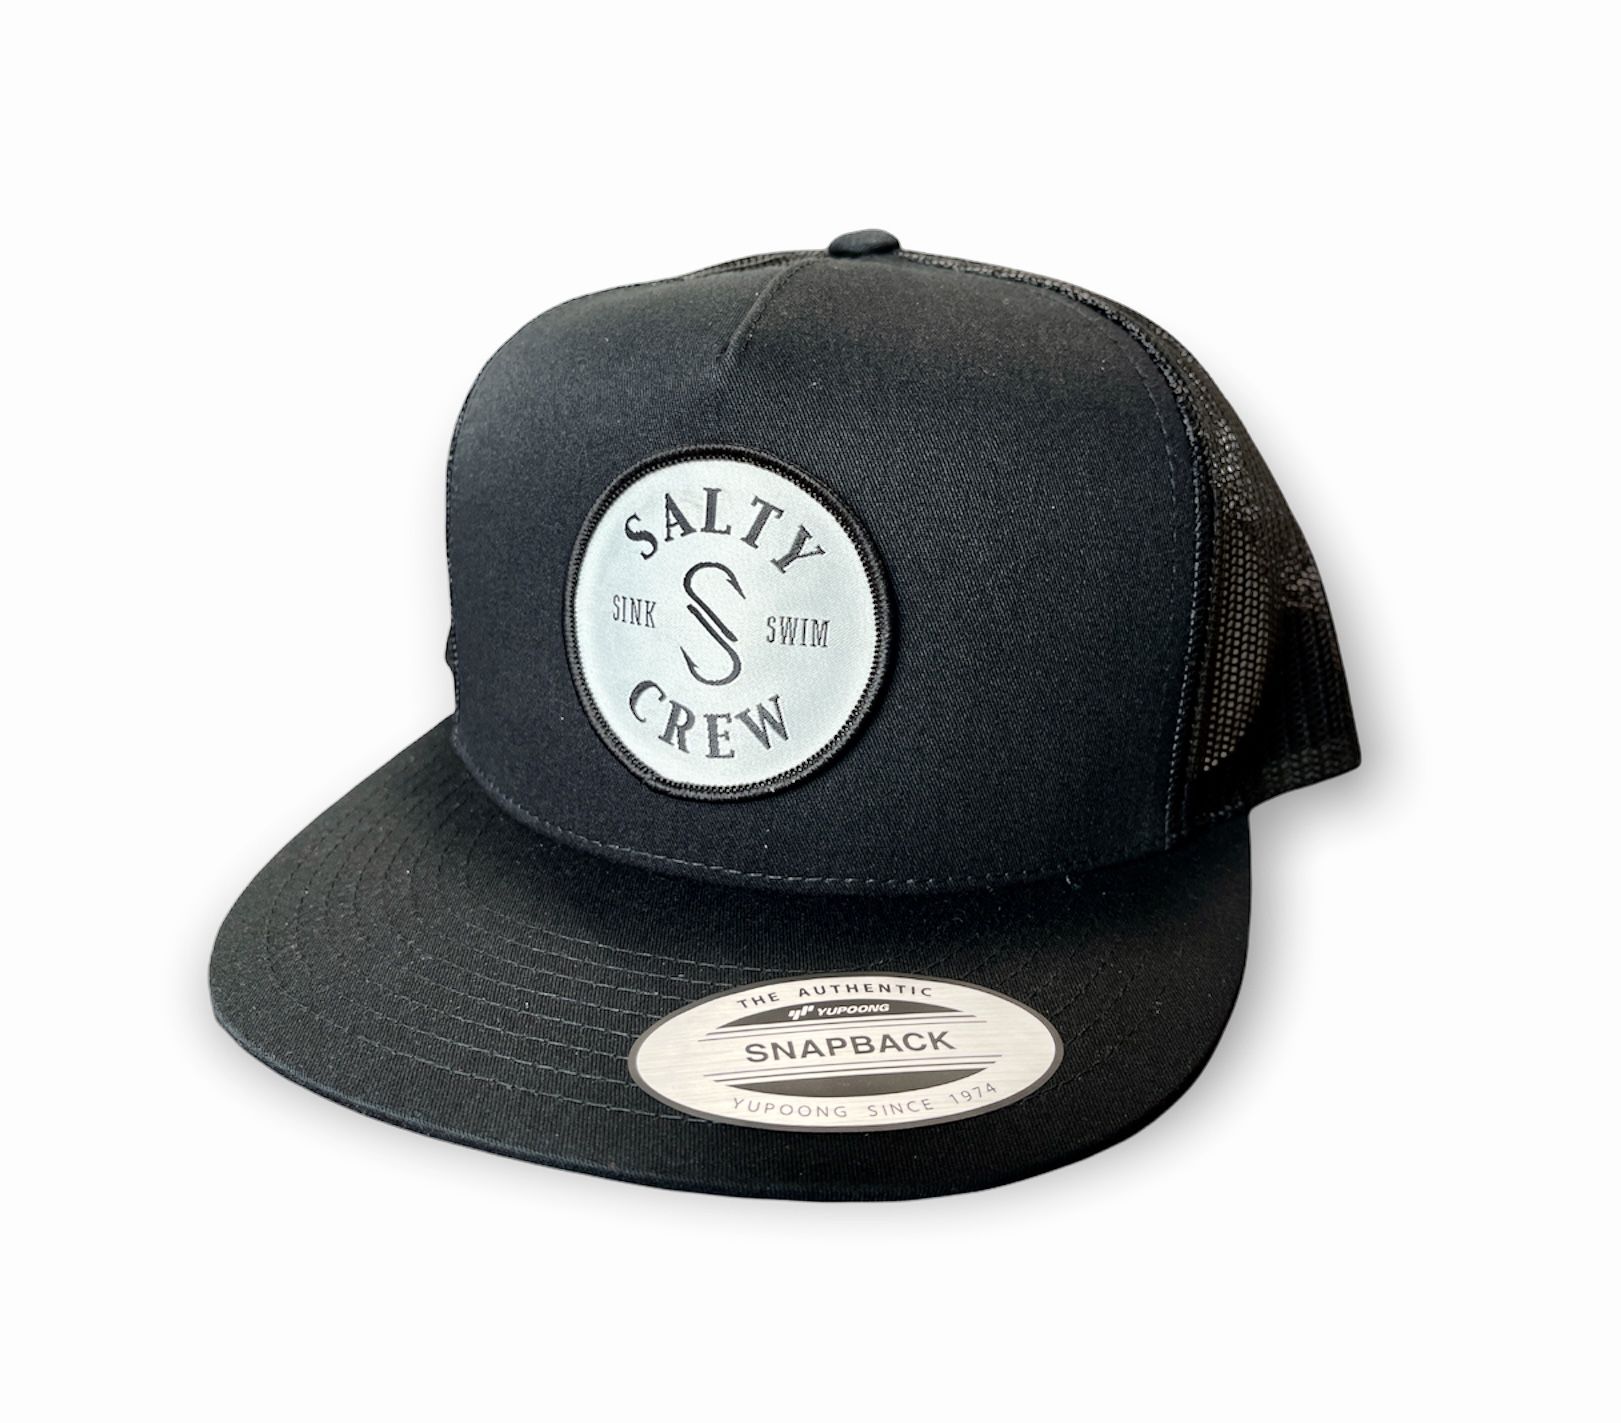 New Men’s Black Mesh Double S-Hook Snapback Salty Crew Hat 